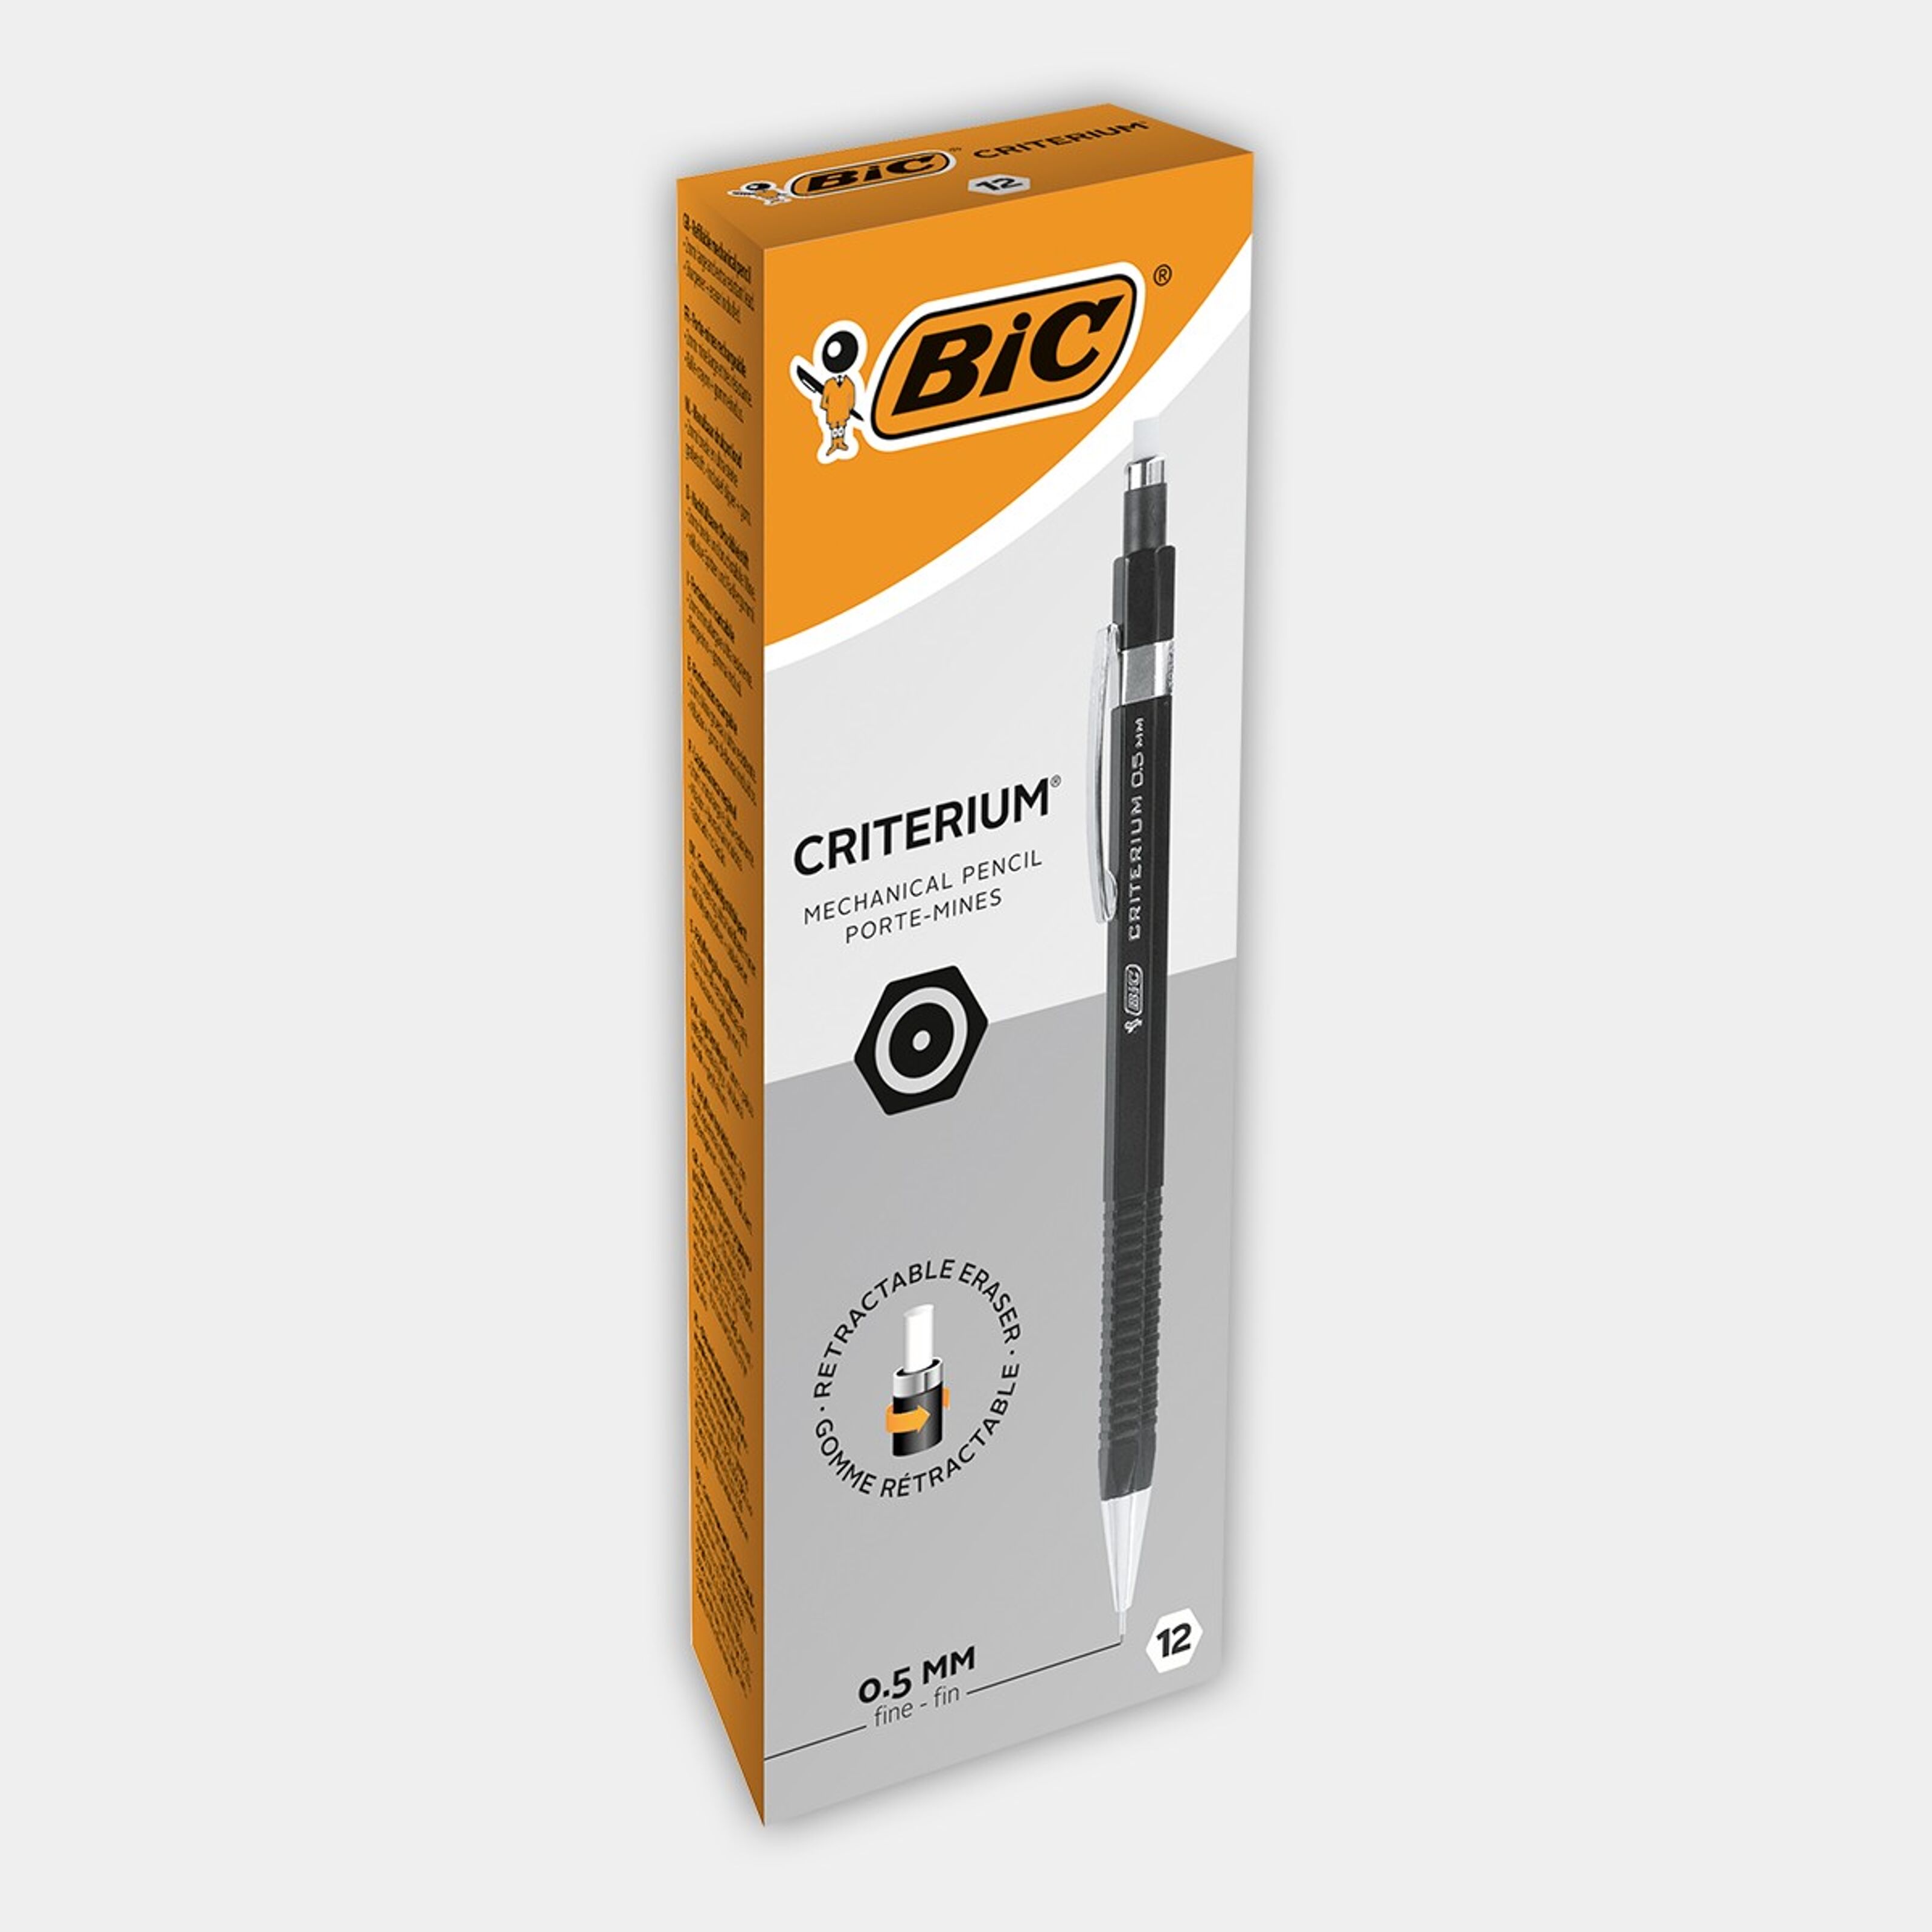 Buy wholesale 12 BIC Criterium mechanical pencils 0.5 mm point